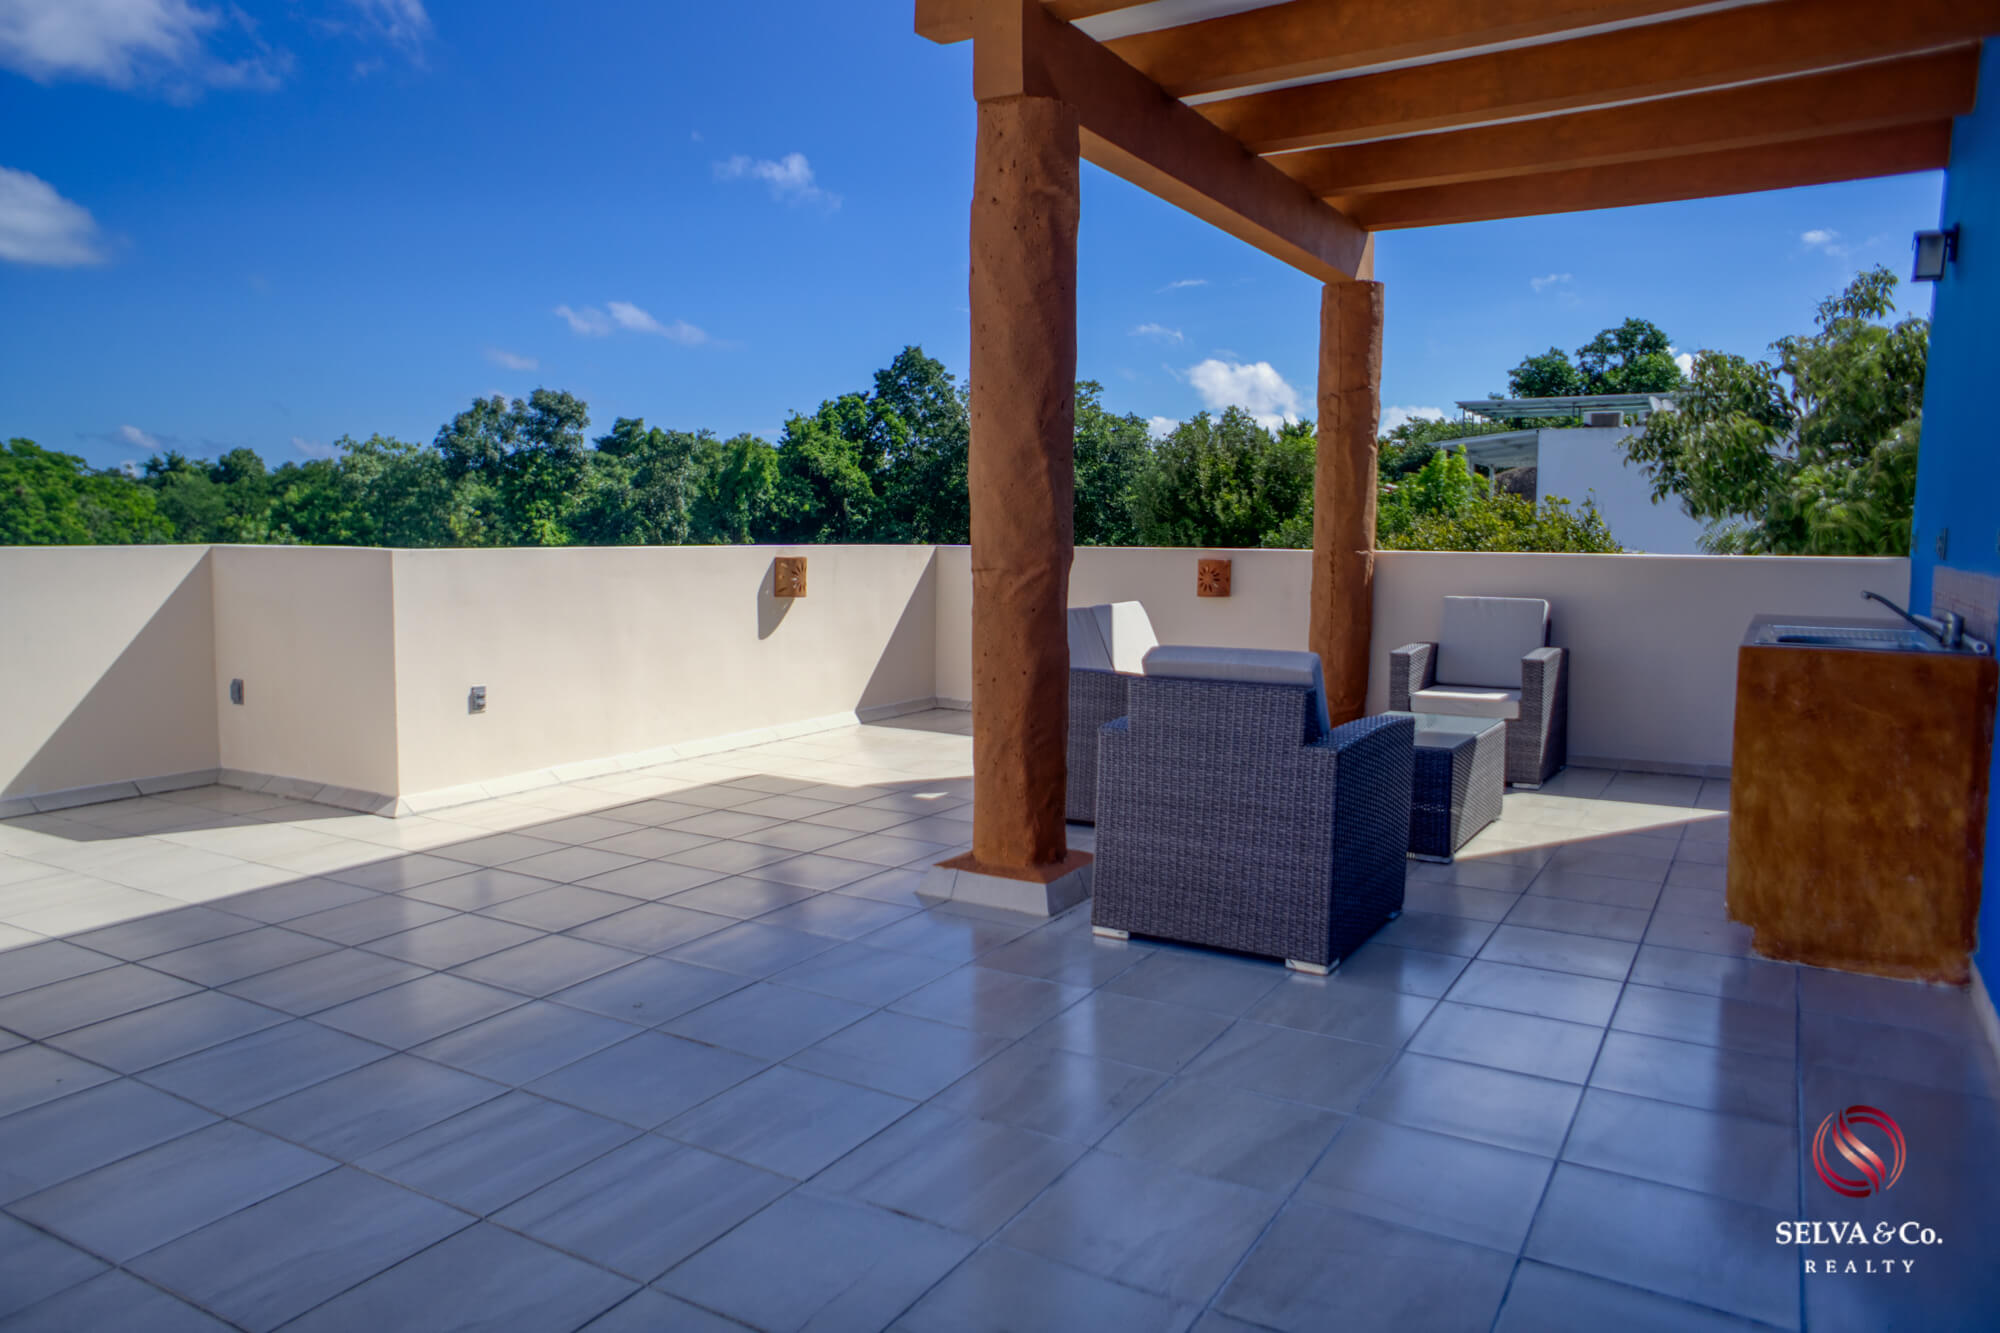 Casa con alberca privada, Jardin y cocina equipada, residencial de lujo con amenidades para toda la familia, en venta, Valenia, Playa del Ca